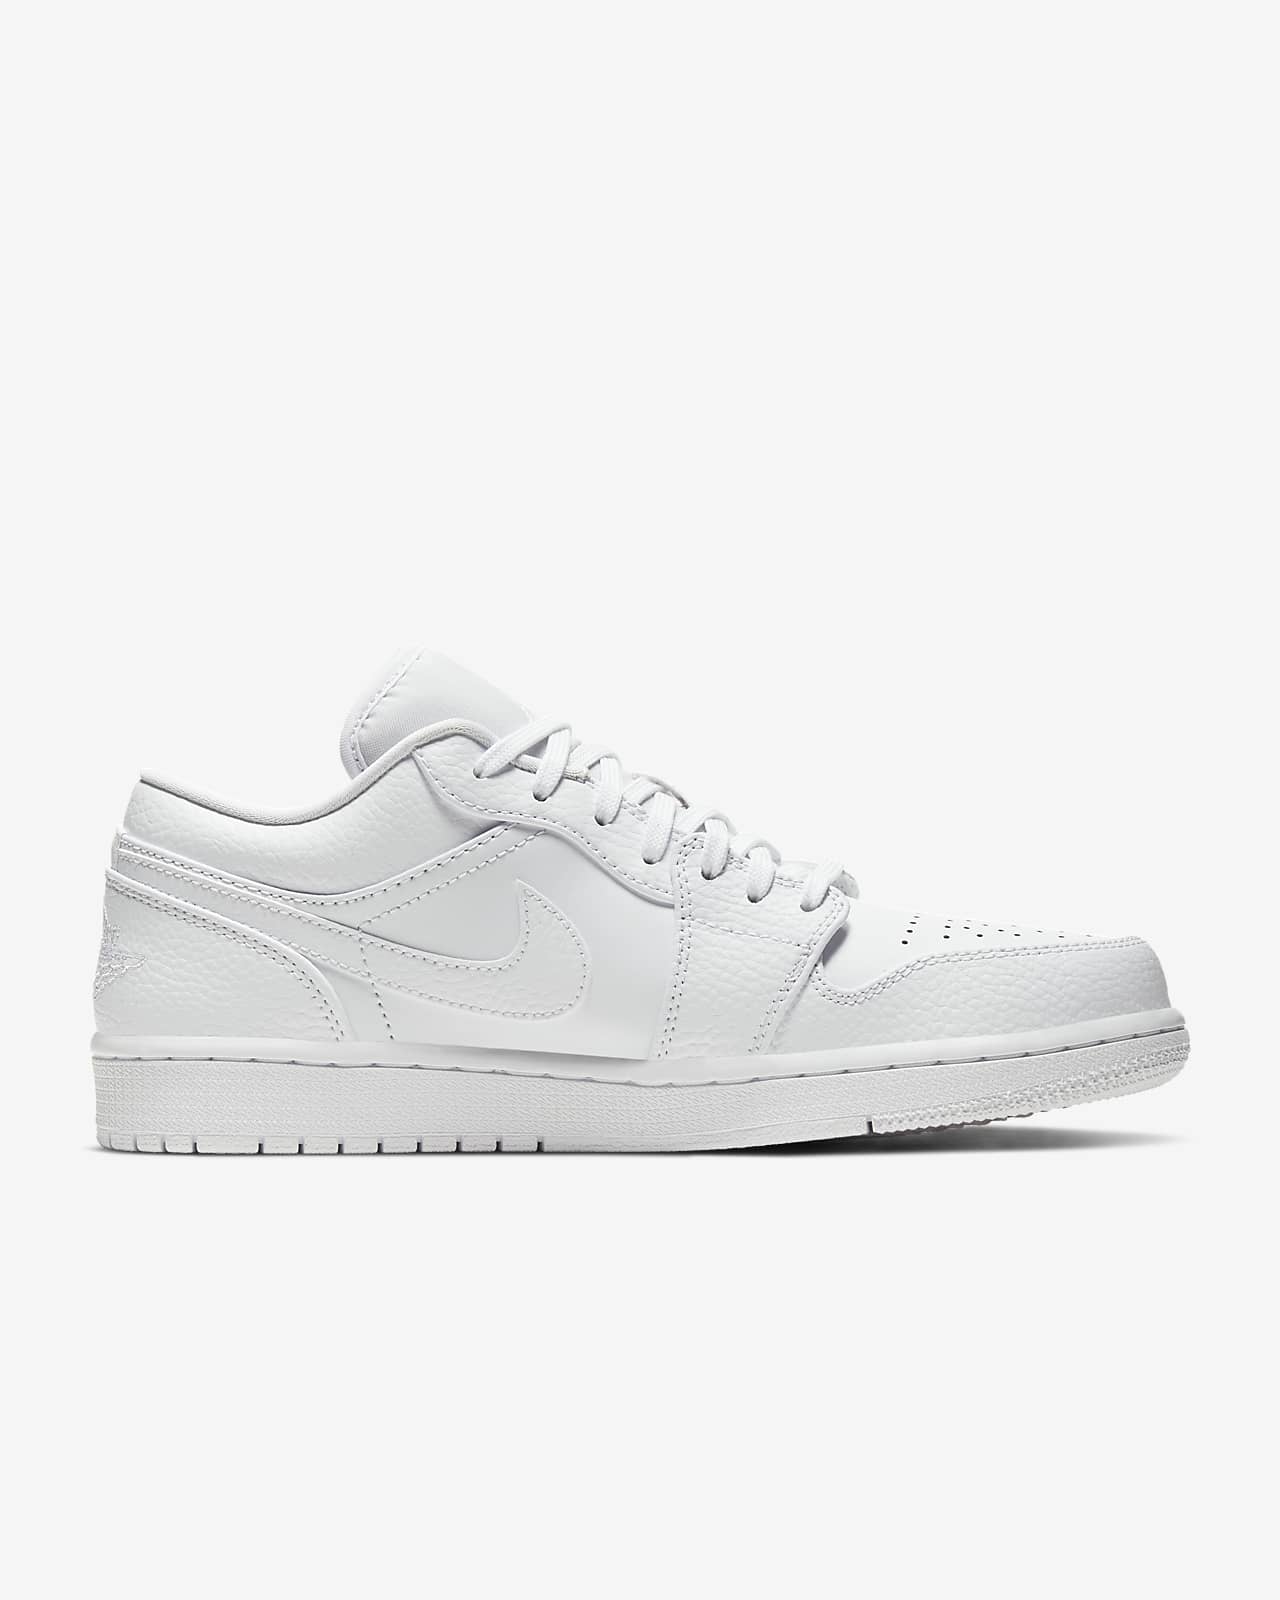 Air Jordan 1 Low Shoe. Nike LU